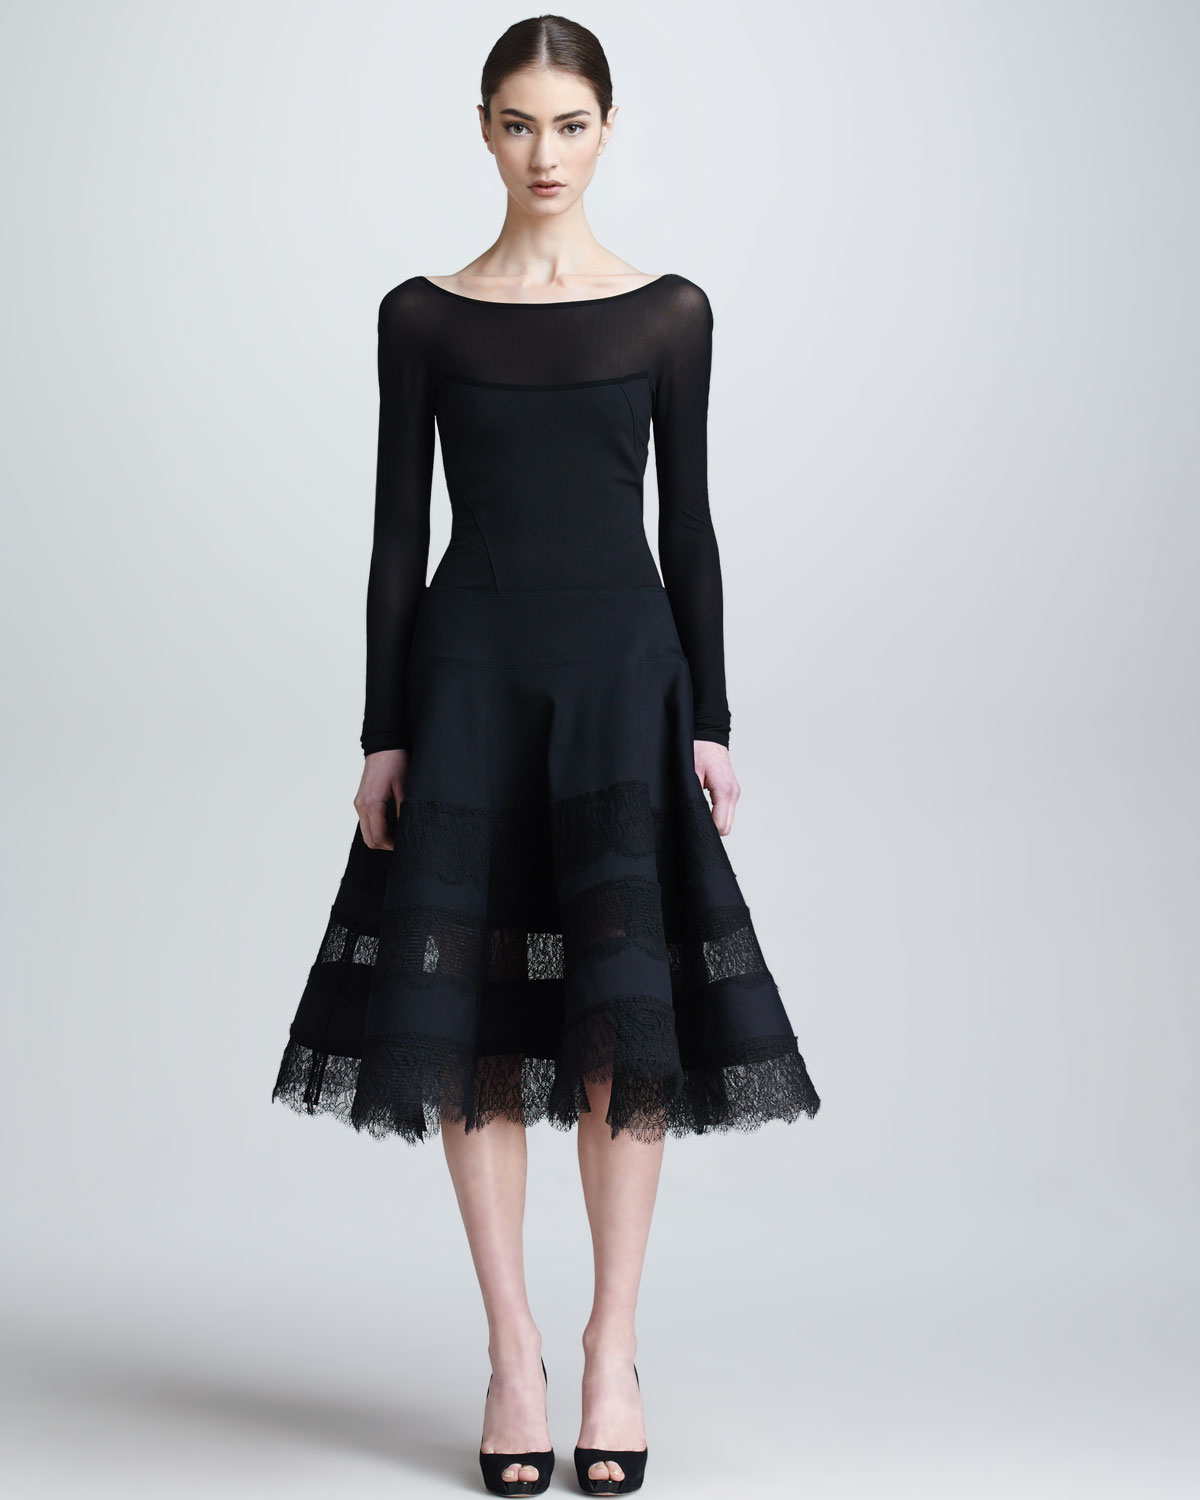 Donna karan Lace Jersey Longsleeve Dress in Black | Lyst